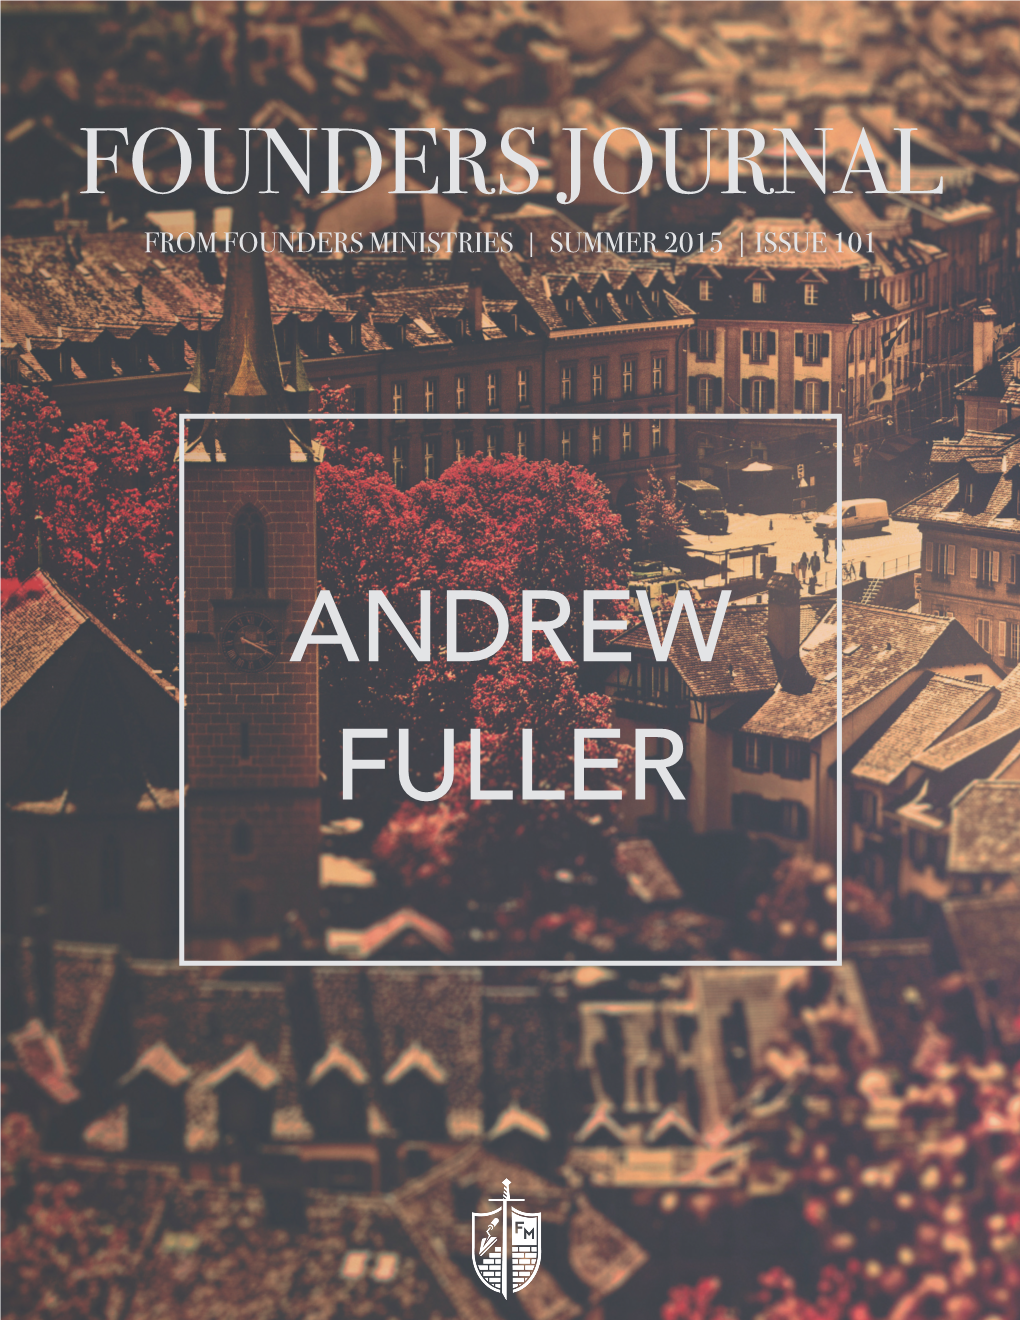 Andrew Fuller